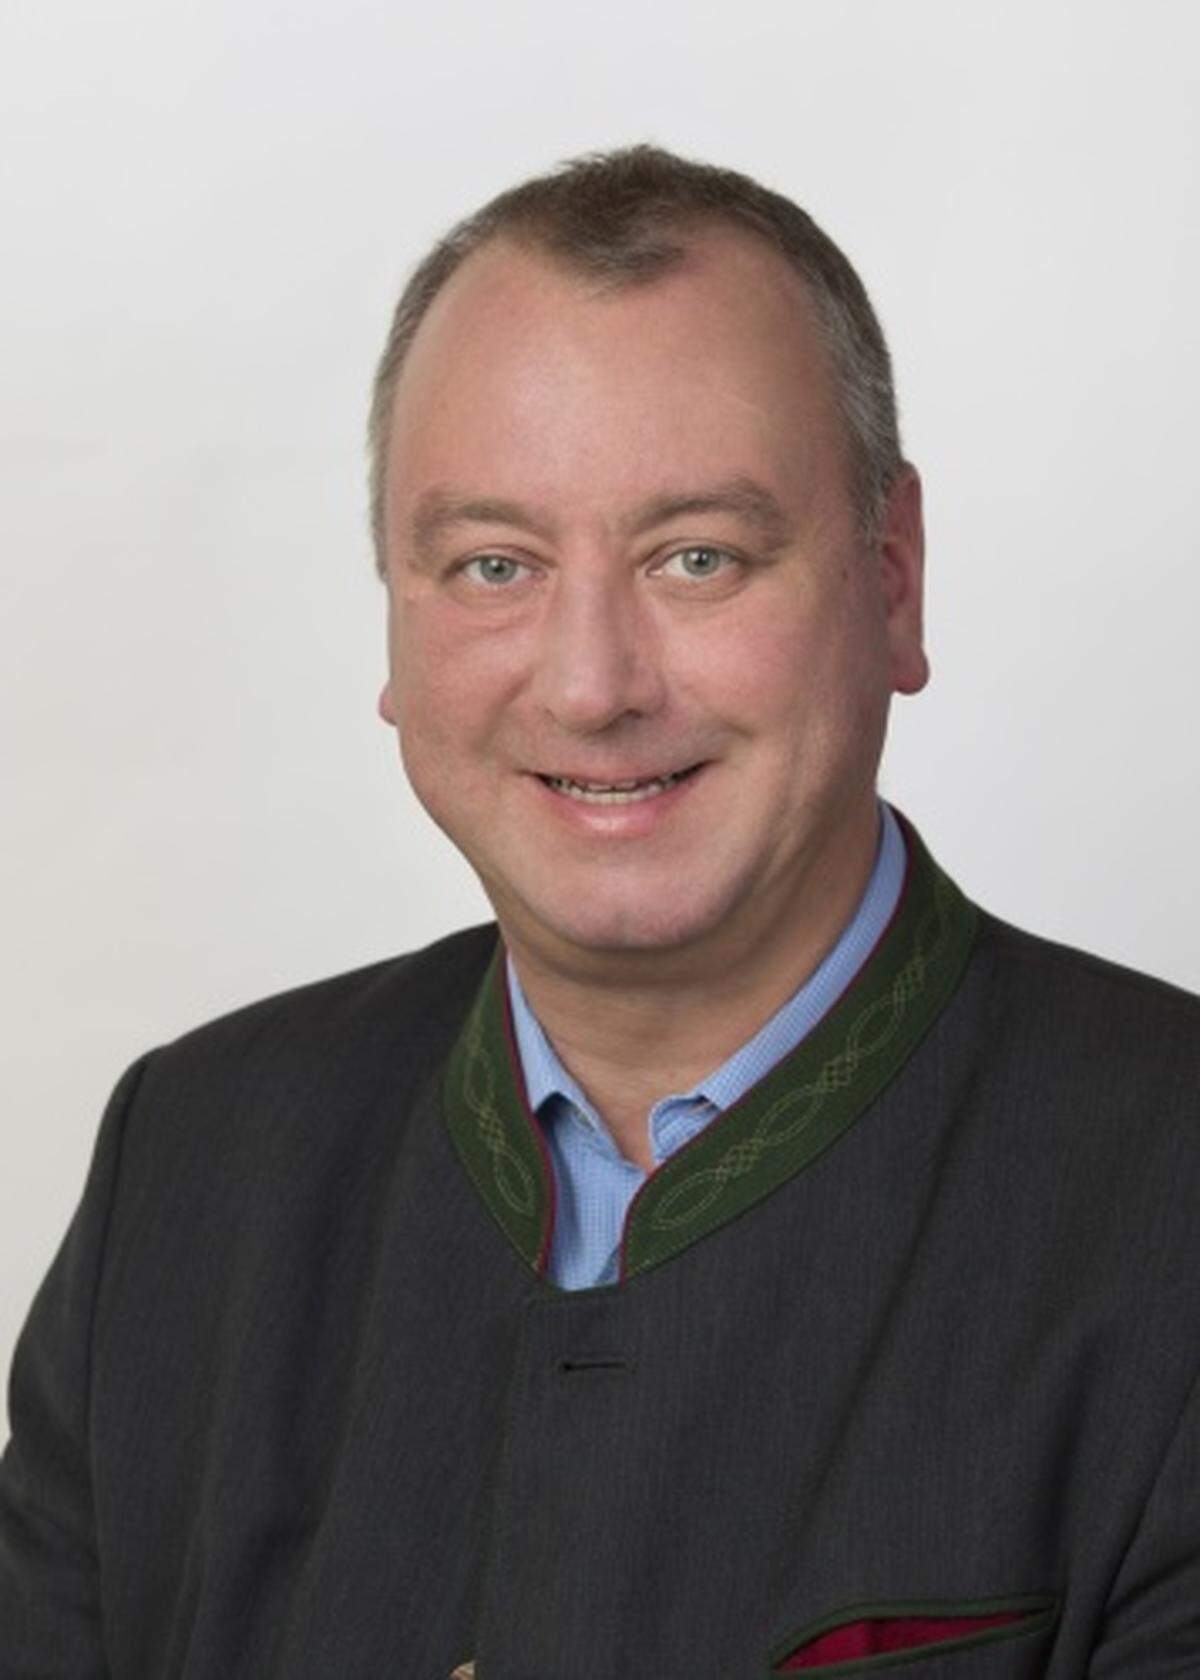 Wolfgang Zanger ist seit 2006 Nationalratsabgeordneter, davor war der Steirer hauptberuflich Bankangestellter. Als Funktionär engagierte sich Zanger ab 2002 auf Gemeinde-, später auf Landesebene für die FPÖ.